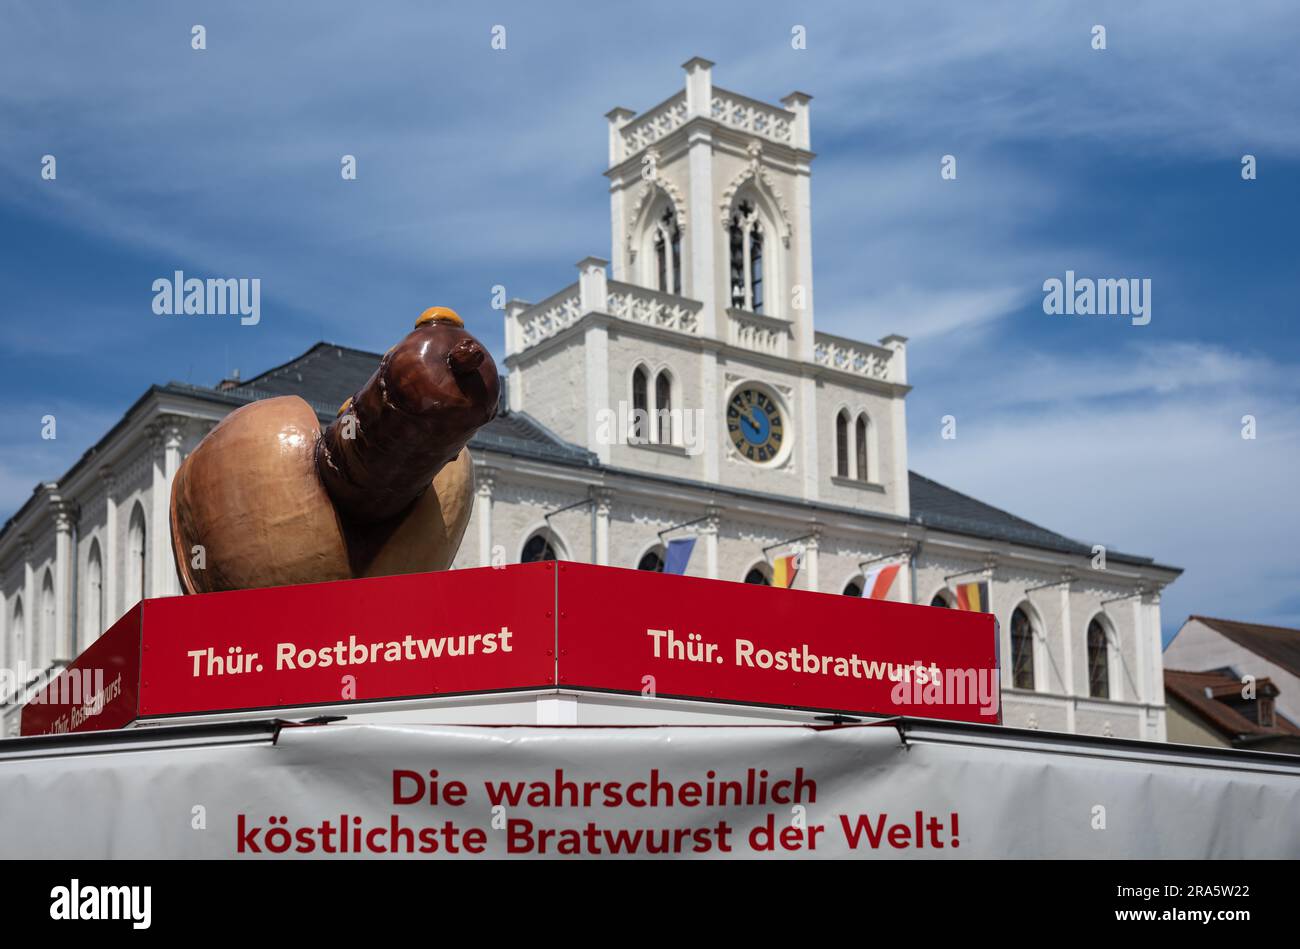 Bancarella del mercato che pubblicizza la Turingia Rostbratwurst, dietro di esso storico municipio neogotico, piazza del mercato, Weimar, Turingia, Germania Foto Stock